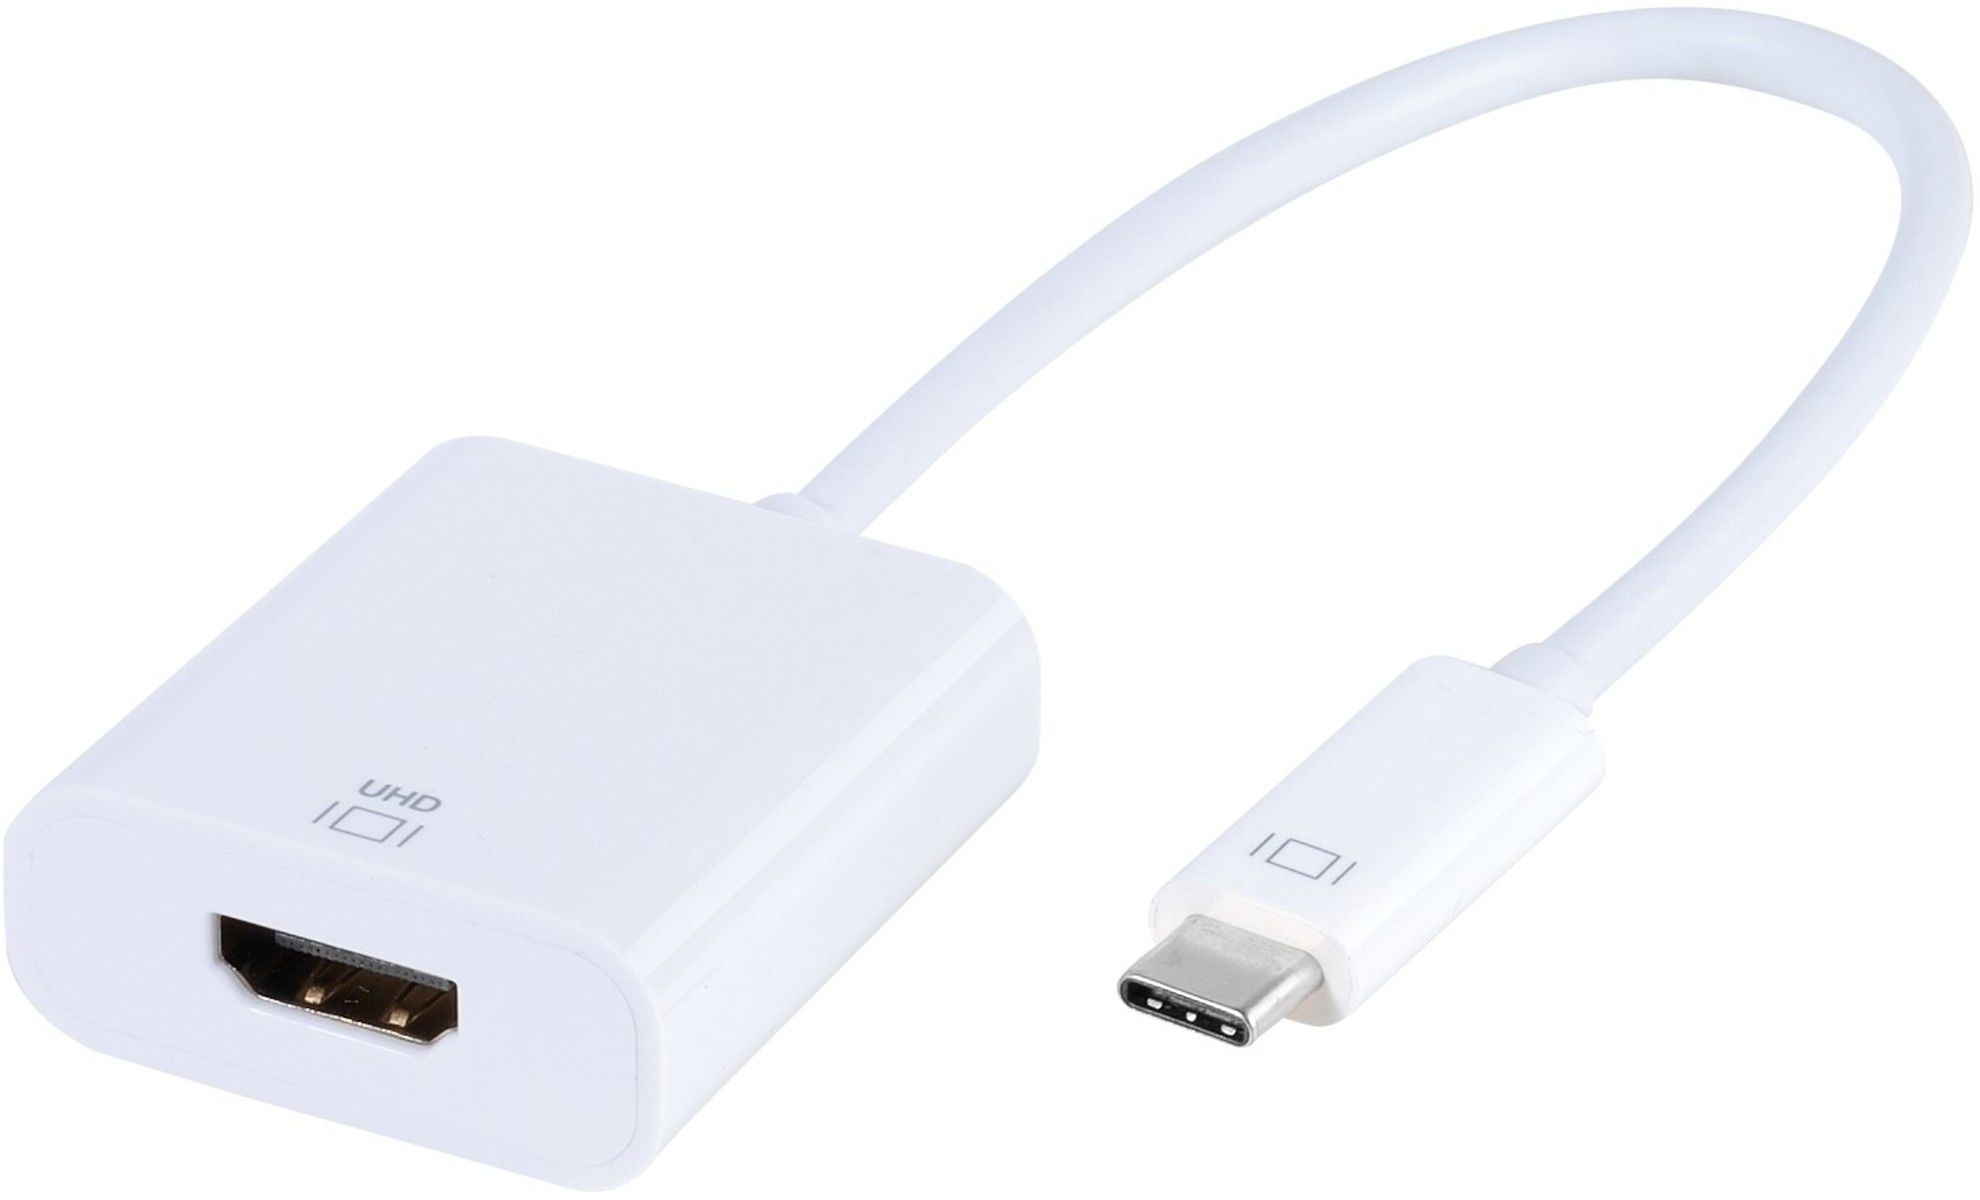 Cable USB type C vers USB 3.0 type A VIVANCO - Vente de Matériel